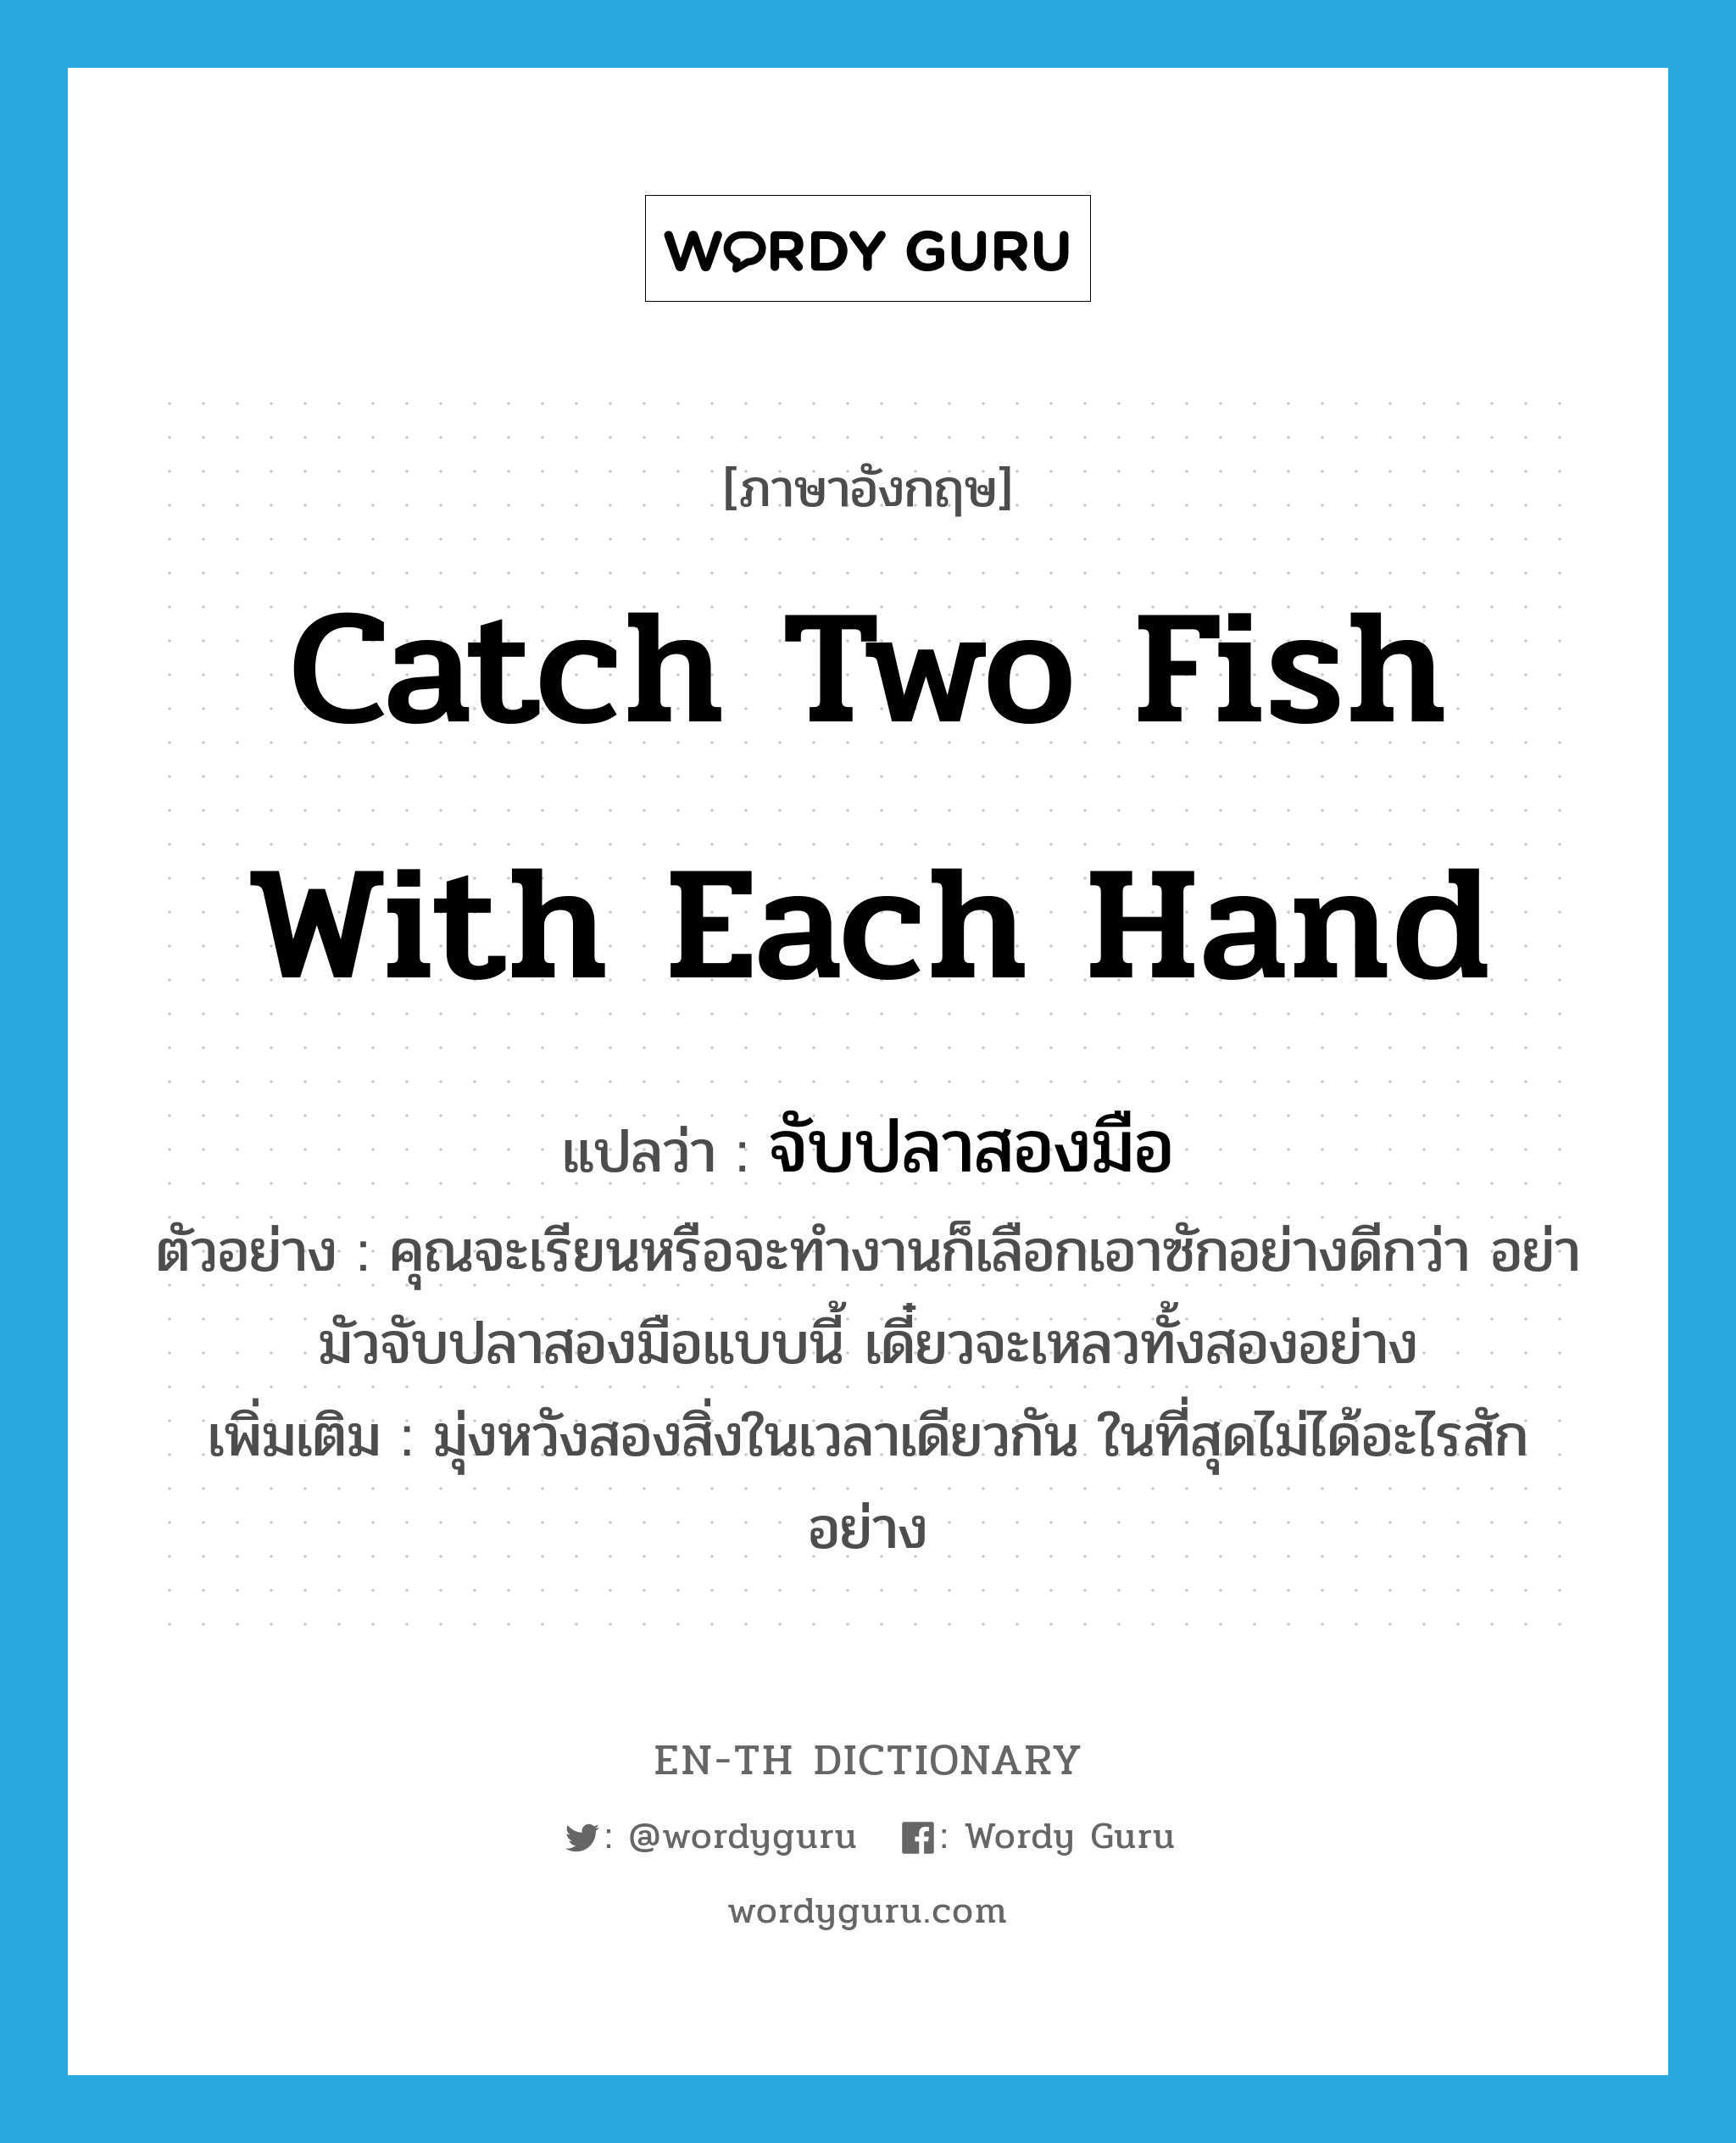 จับปลาสองมือ ภาษาอังกฤษ?, คำศัพท์ภาษาอังกฤษ จับปลาสองมือ แปลว่า catch two fish with each hand ประเภท V ตัวอย่าง คุณจะเรียนหรือจะทำงานก็เลือกเอาซักอย่างดีกว่า อย่ามัวจับปลาสองมือแบบนี้ เดี๋ยวจะเหลวทั้งสองอย่าง เพิ่มเติม มุ่งหวังสองสิ่งในเวลาเดียวกัน ในที่สุดไม่ได้อะไรสักอย่าง หมวด V